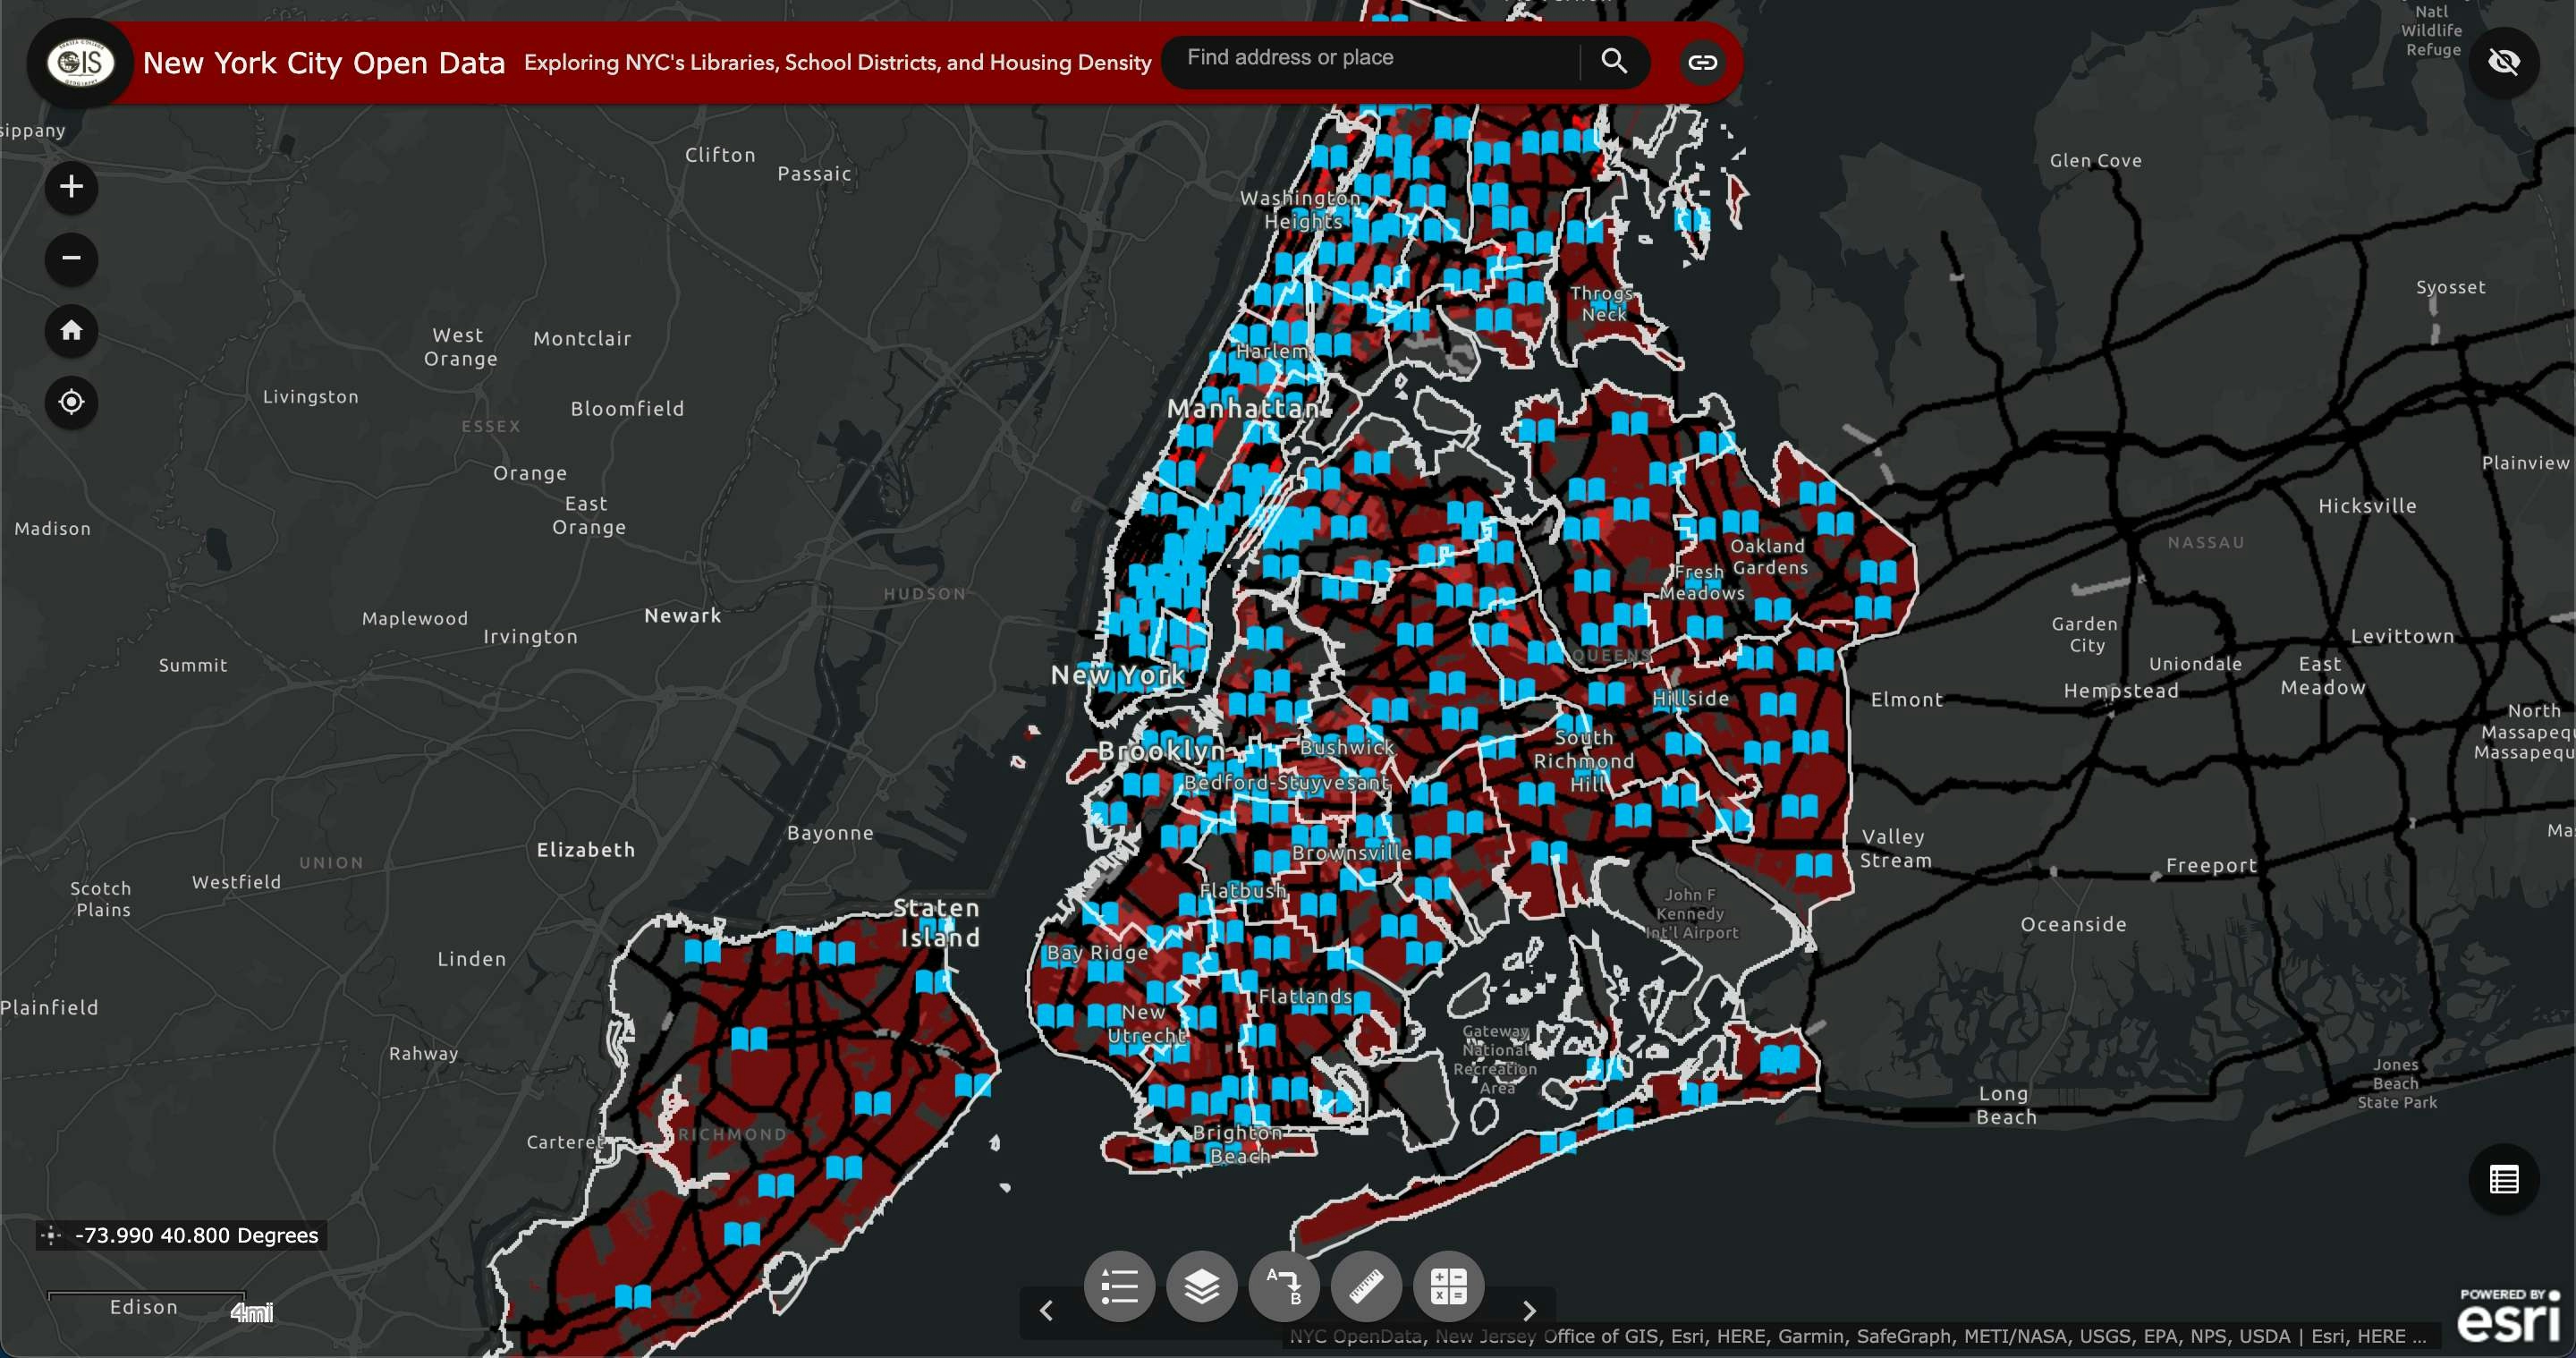 New York City Open Data